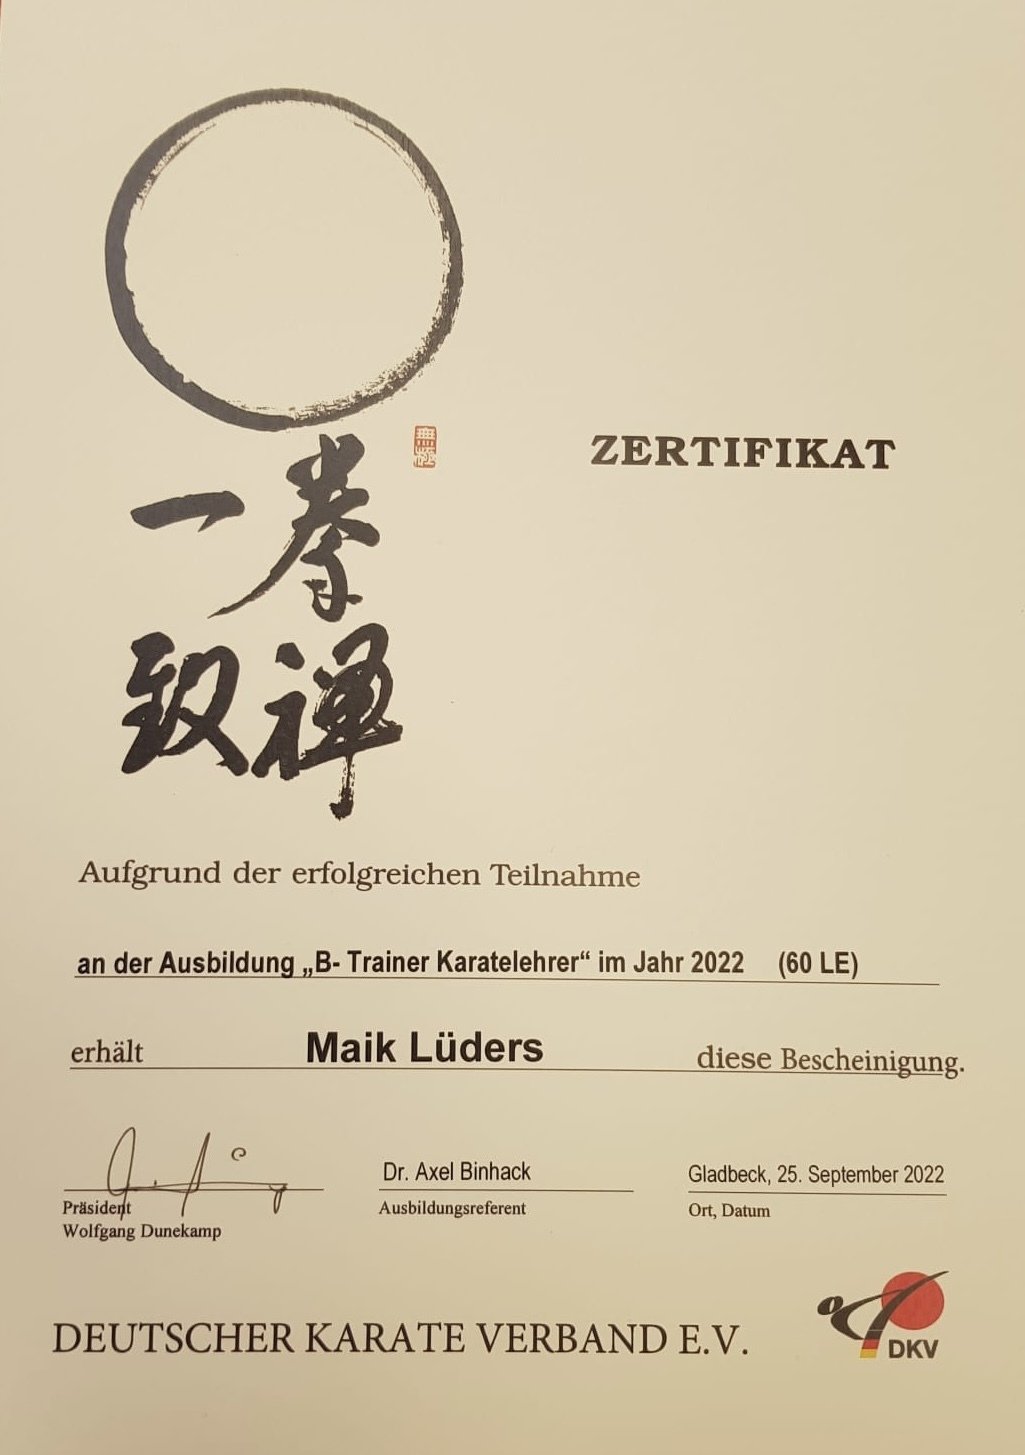 25.09.2022 - Maik Lüders absolviert DKV-Karatelehrer-Ausbildung